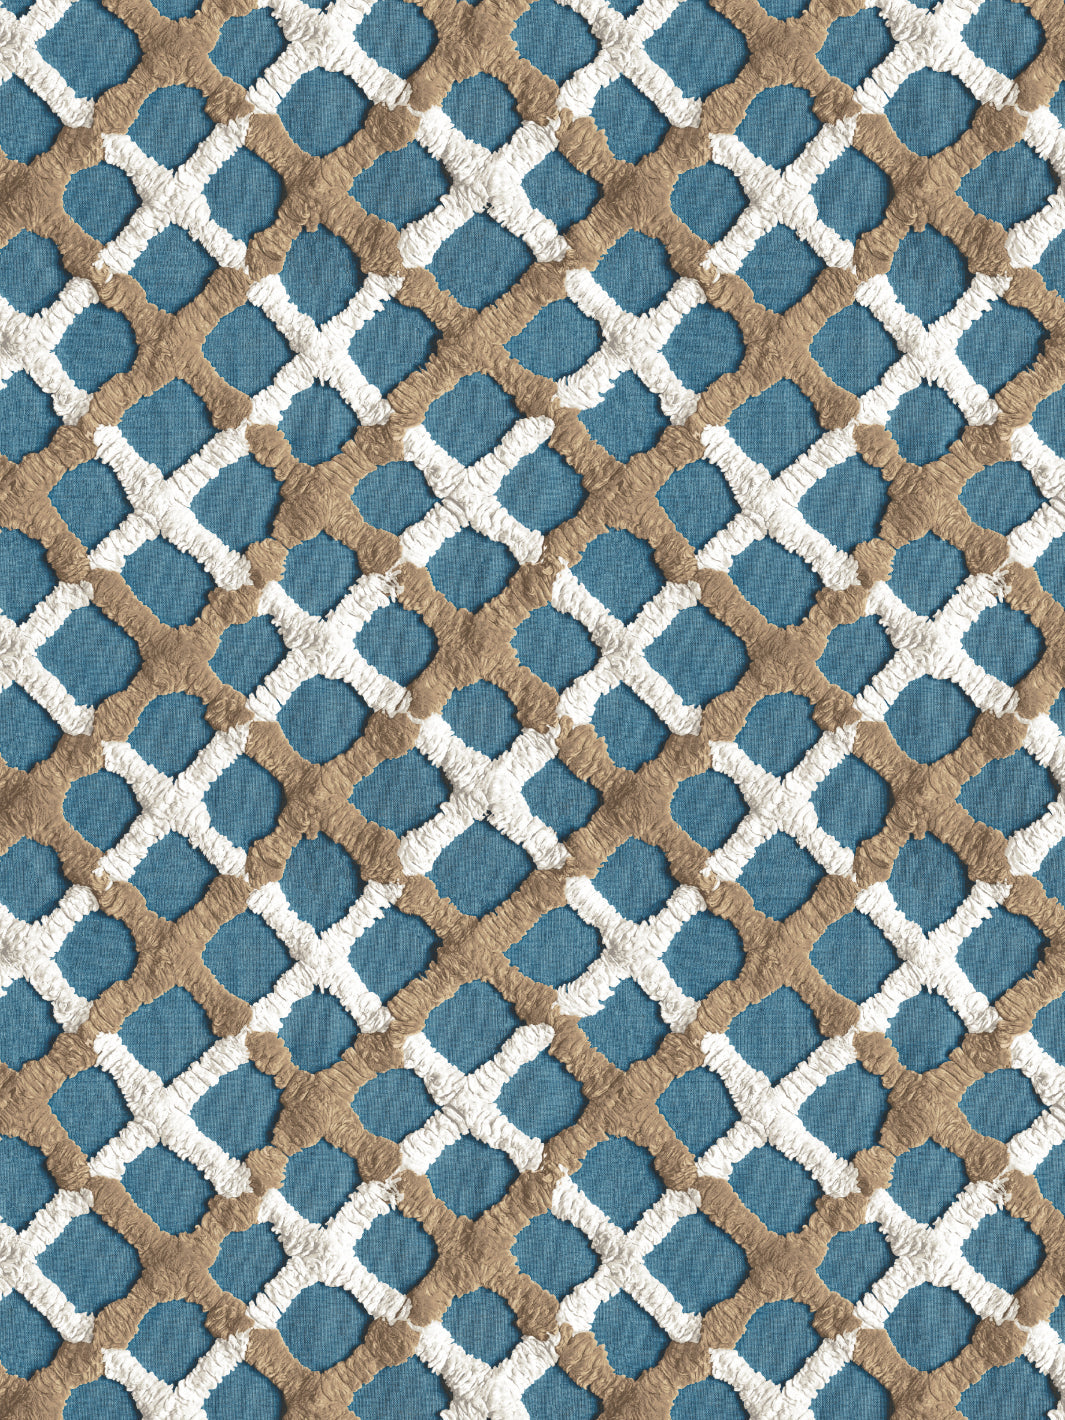 'Chenille Quilt' Wallpaper by Chris Benz - Deep Blue